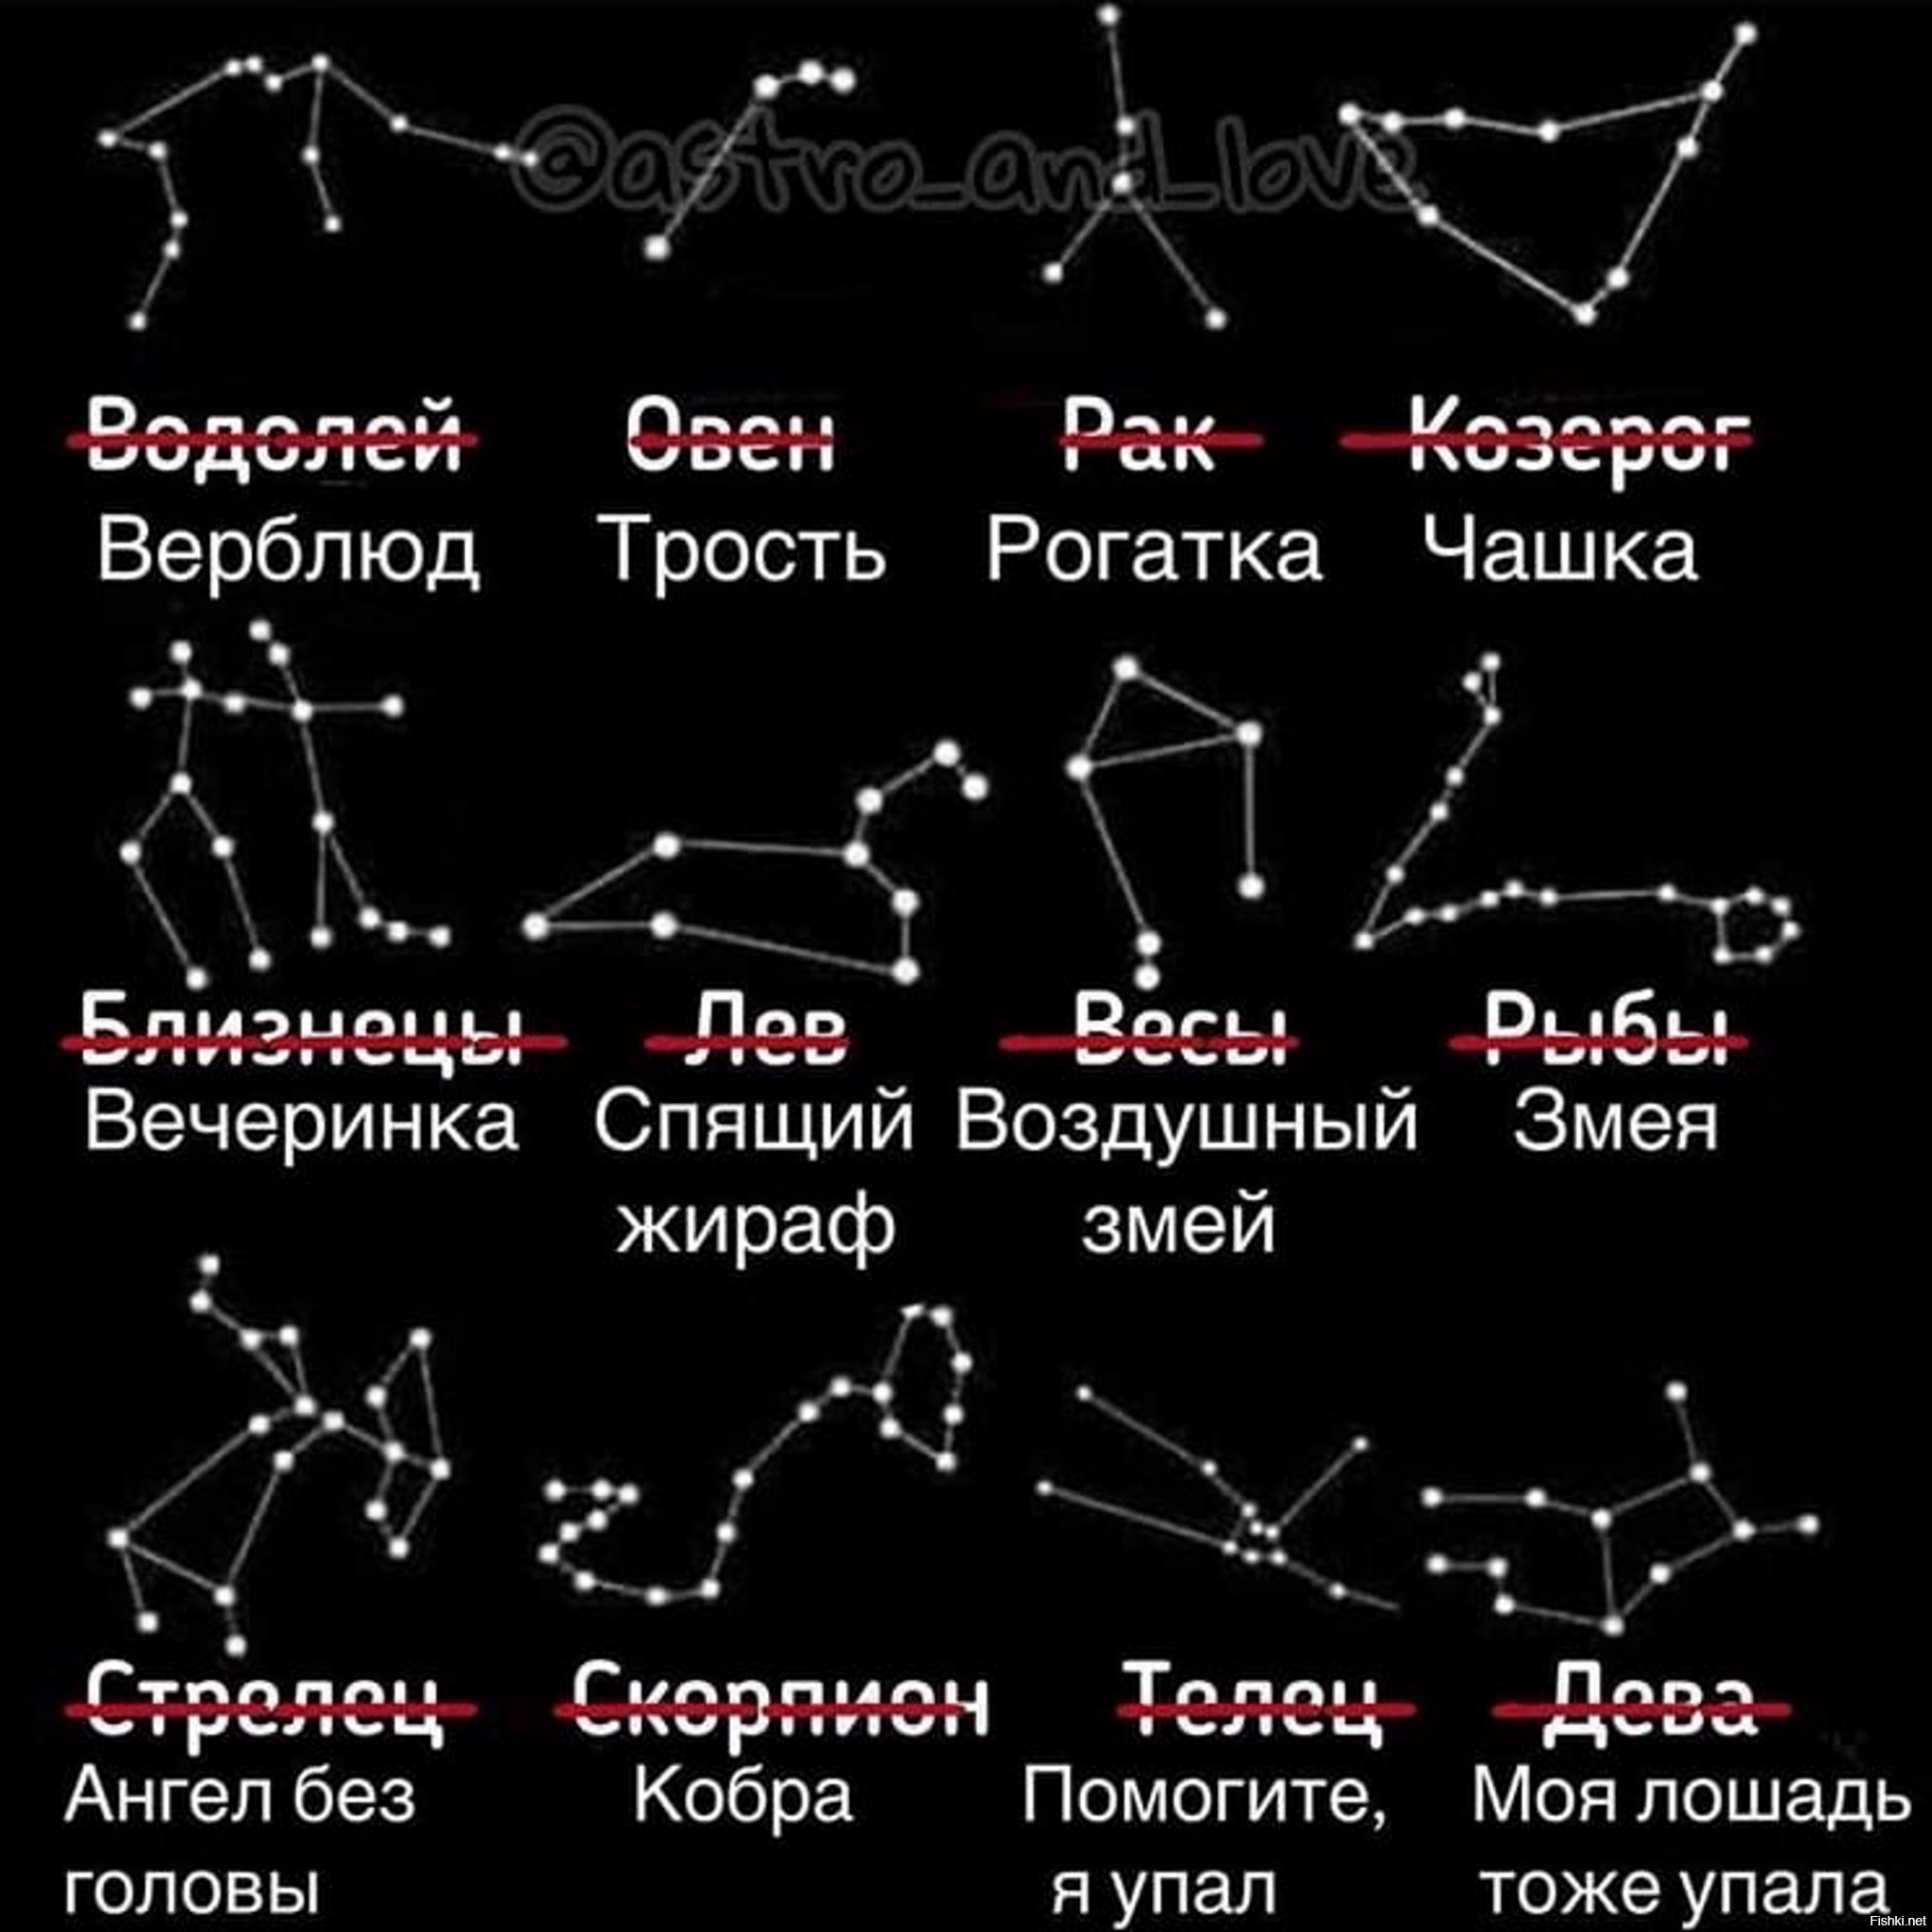 созвездия звездного неба картинки и их названия